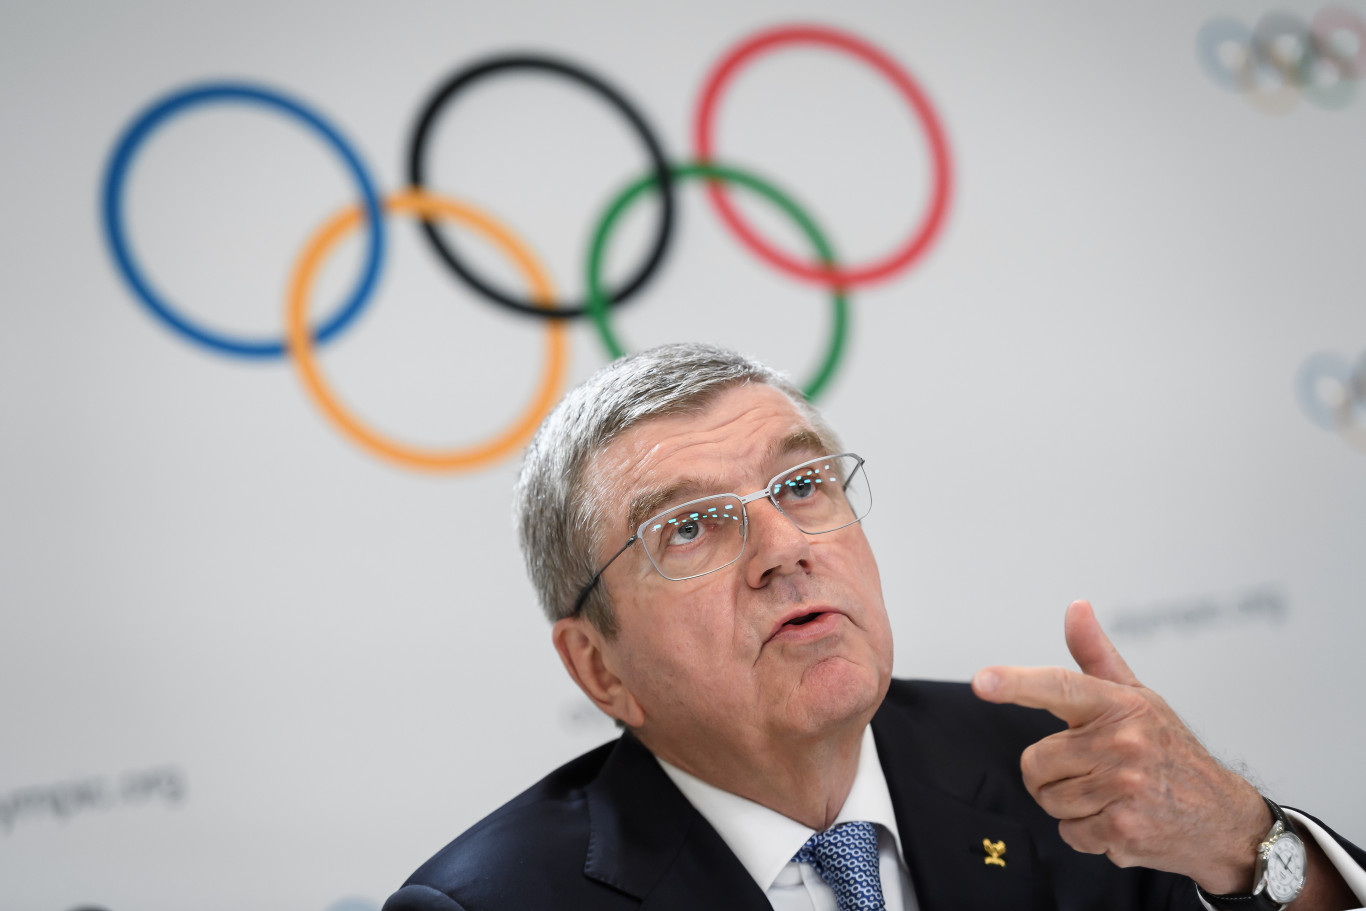 A NOB elnöke szerint rengetegen érdeklődnek a 2036-os nyári olimpia iránt, az MTI Magyarországot is feltette a listára